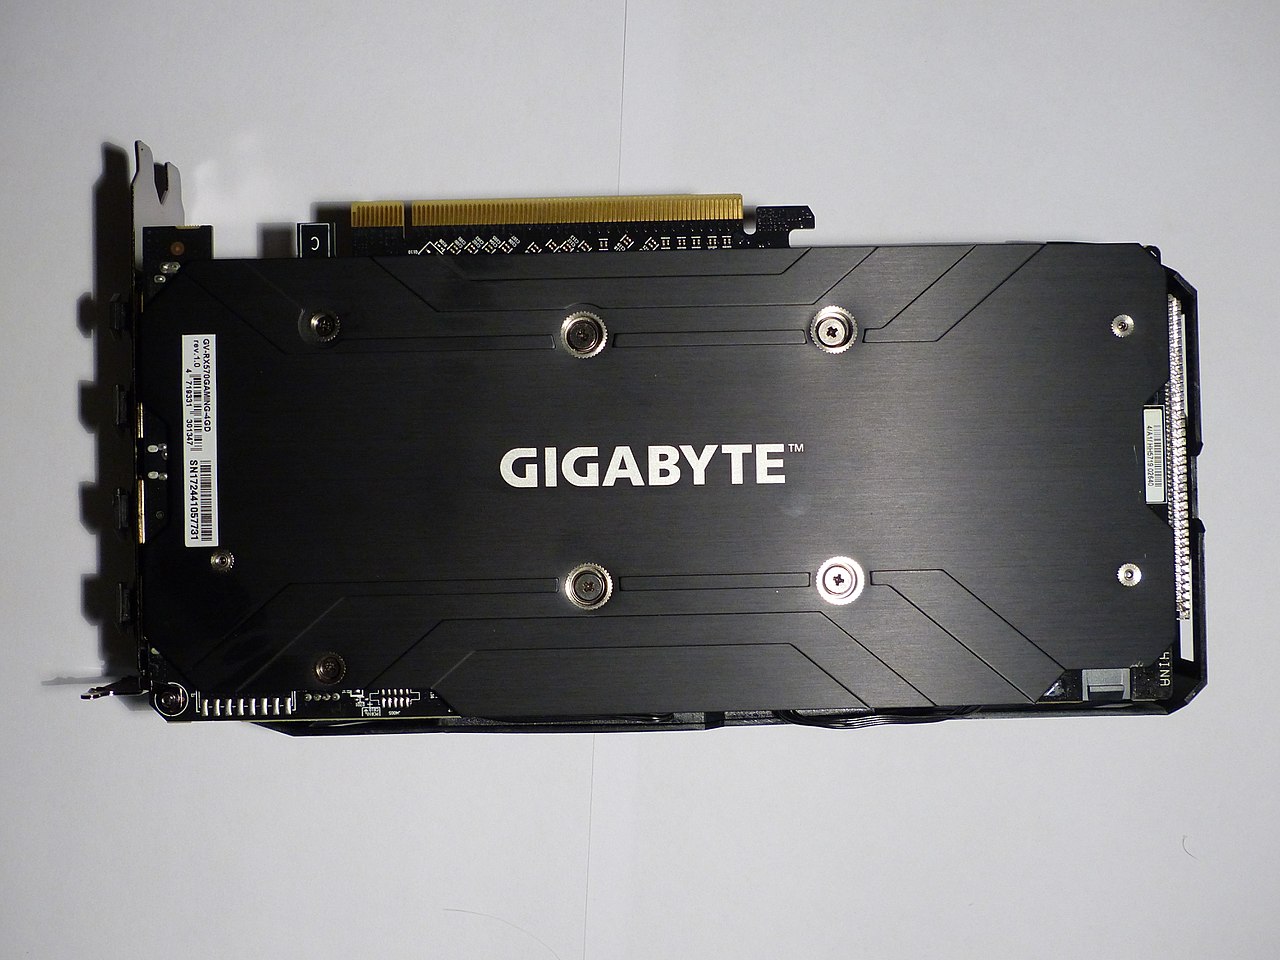 File:Gigabyte Radeon RX 570 Gaming 4G, back.jpg - Wikimedia Commons